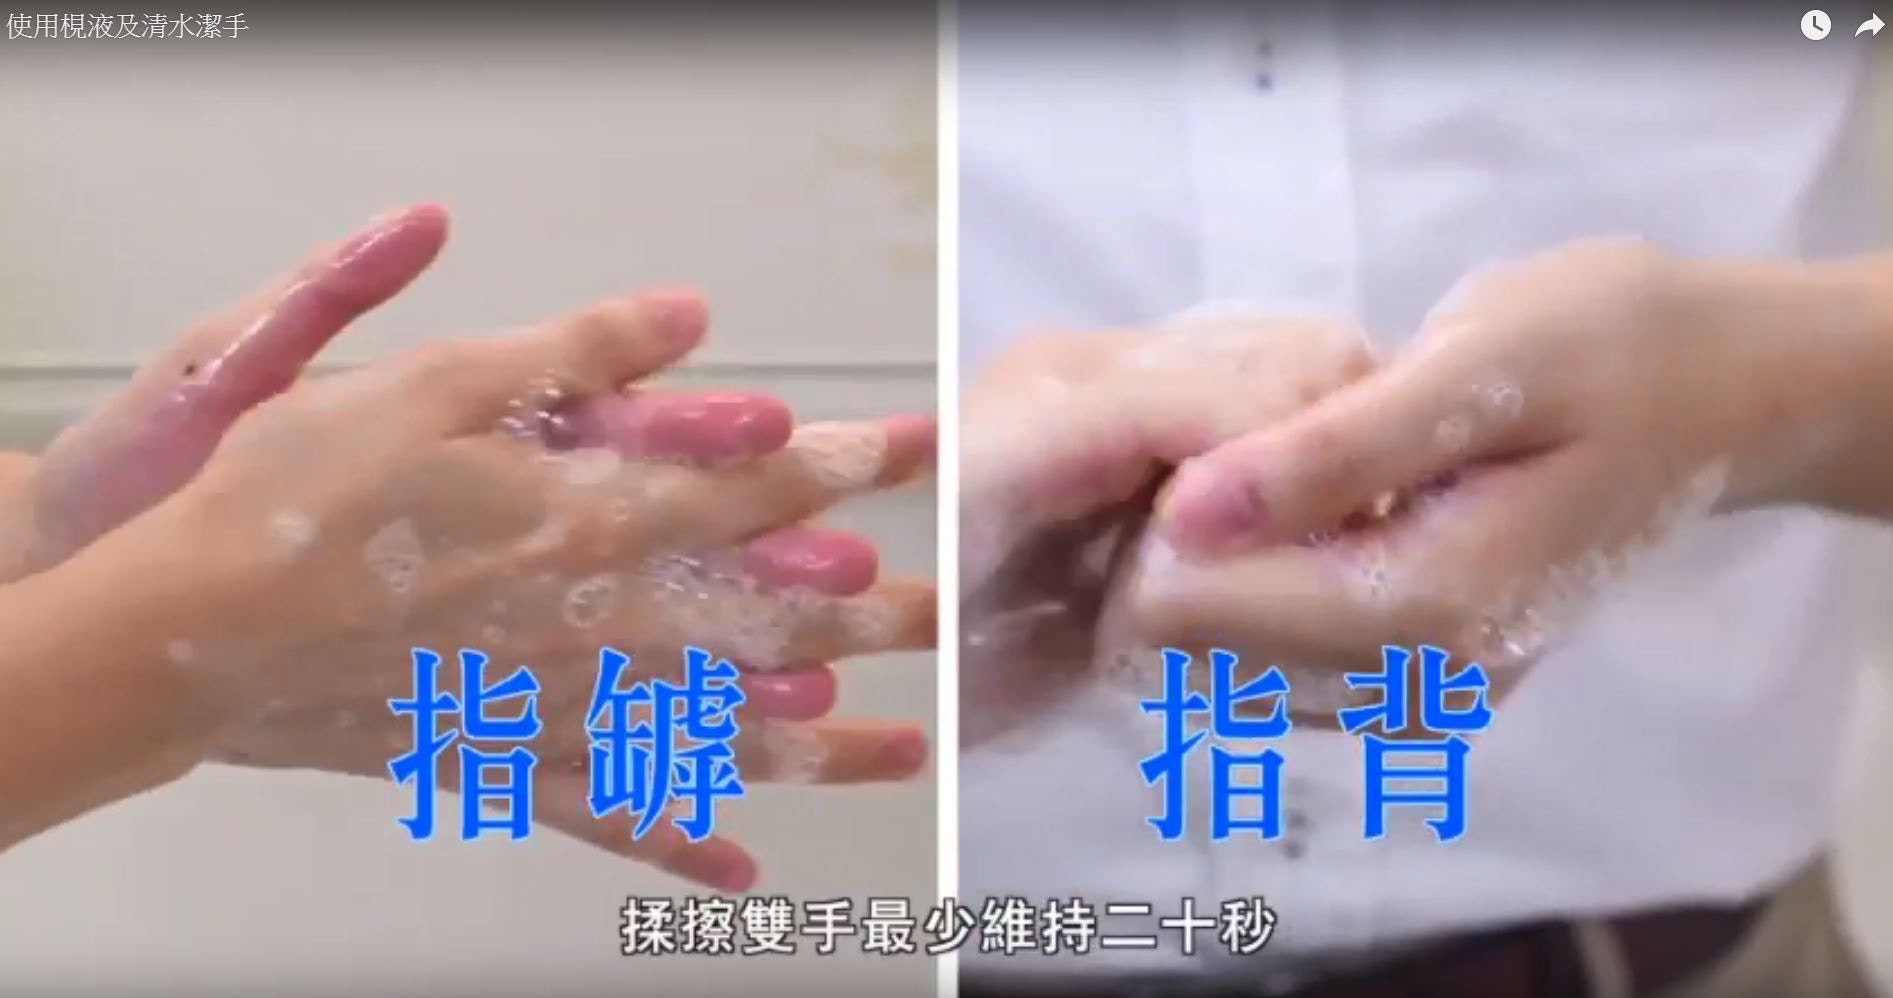 洗手步驟3：按洗手七式揉擦雙手各部分最少20秒，分別是手掌、手背、手指罅、指背、拇指、指尖、手腕。（衞生署衞生防護中心片段截圖）